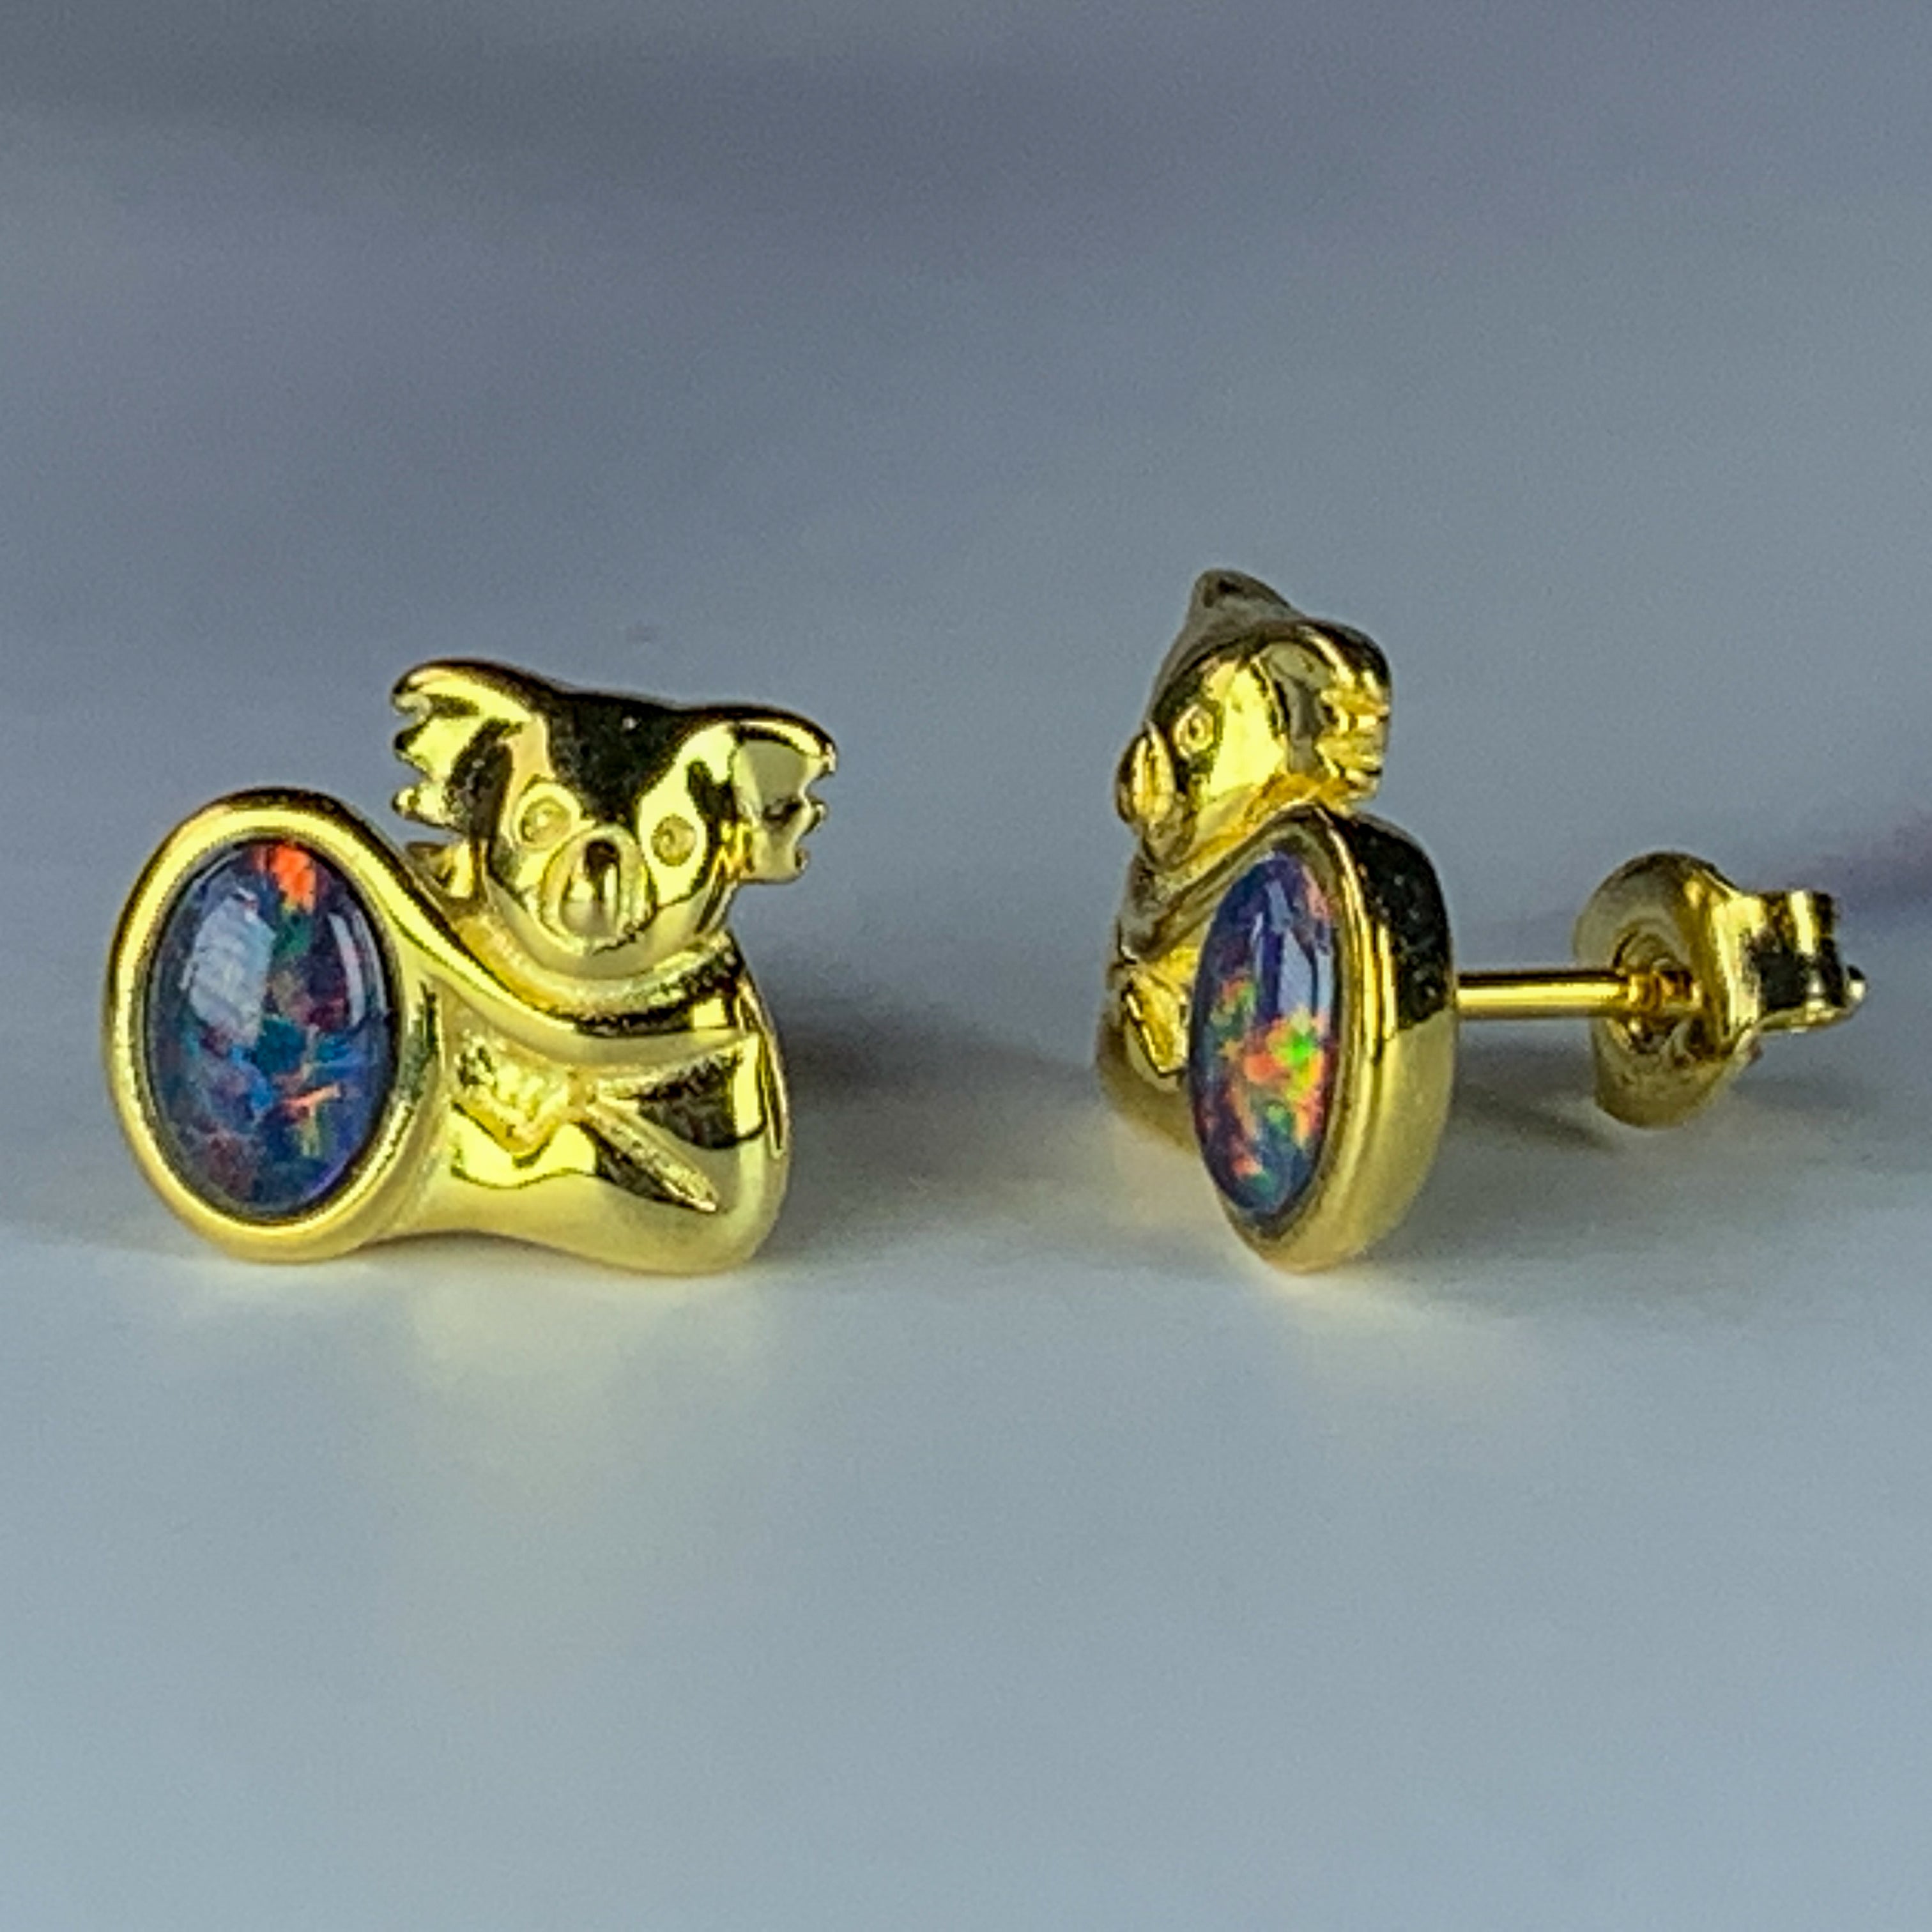 Gold plated Koala stud earrings 6x4mm Opals - Masterpiece Jewellery Opal & Gems Sydney Australia | Online Shop